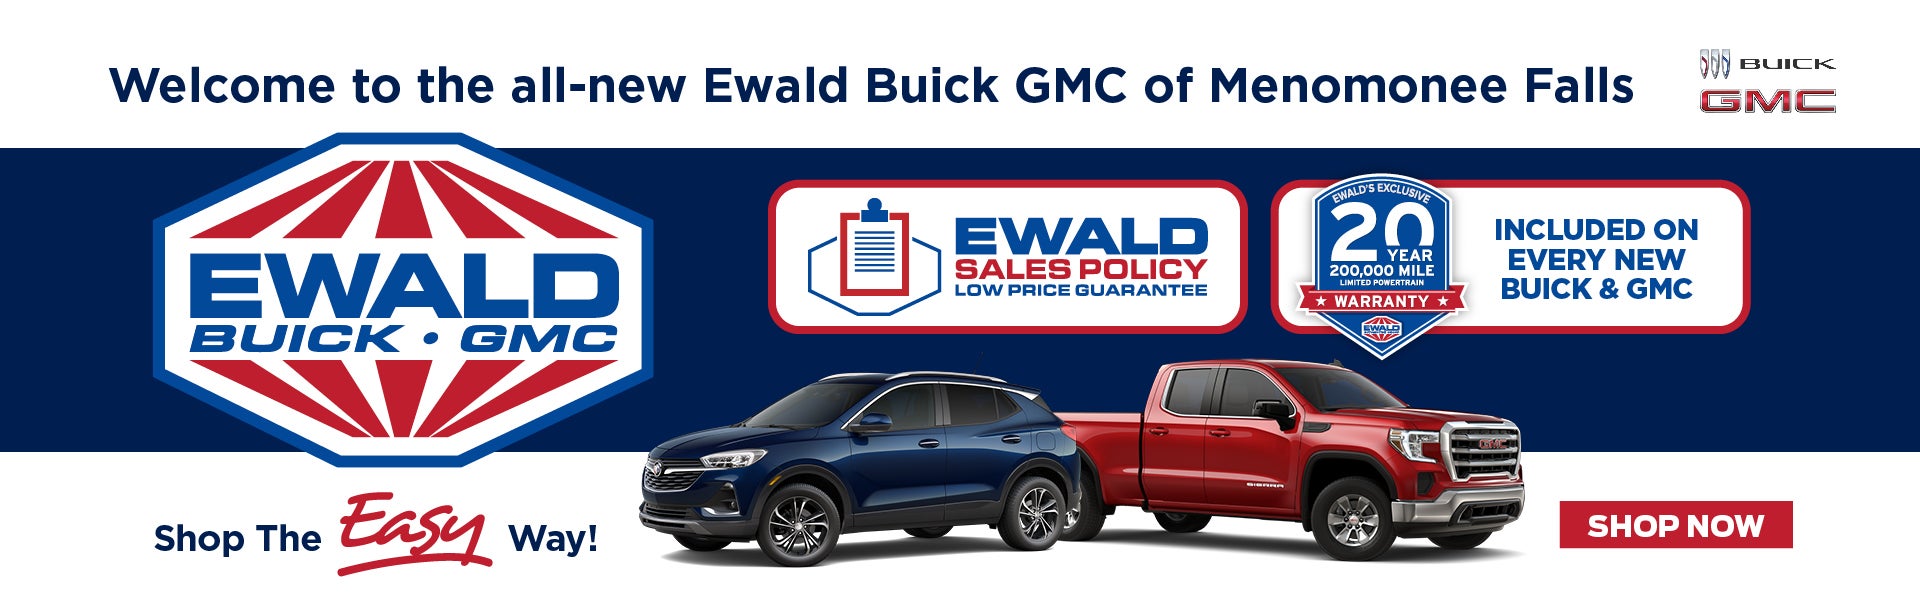 Ewald 20 Year/200,000 Mile Warranty